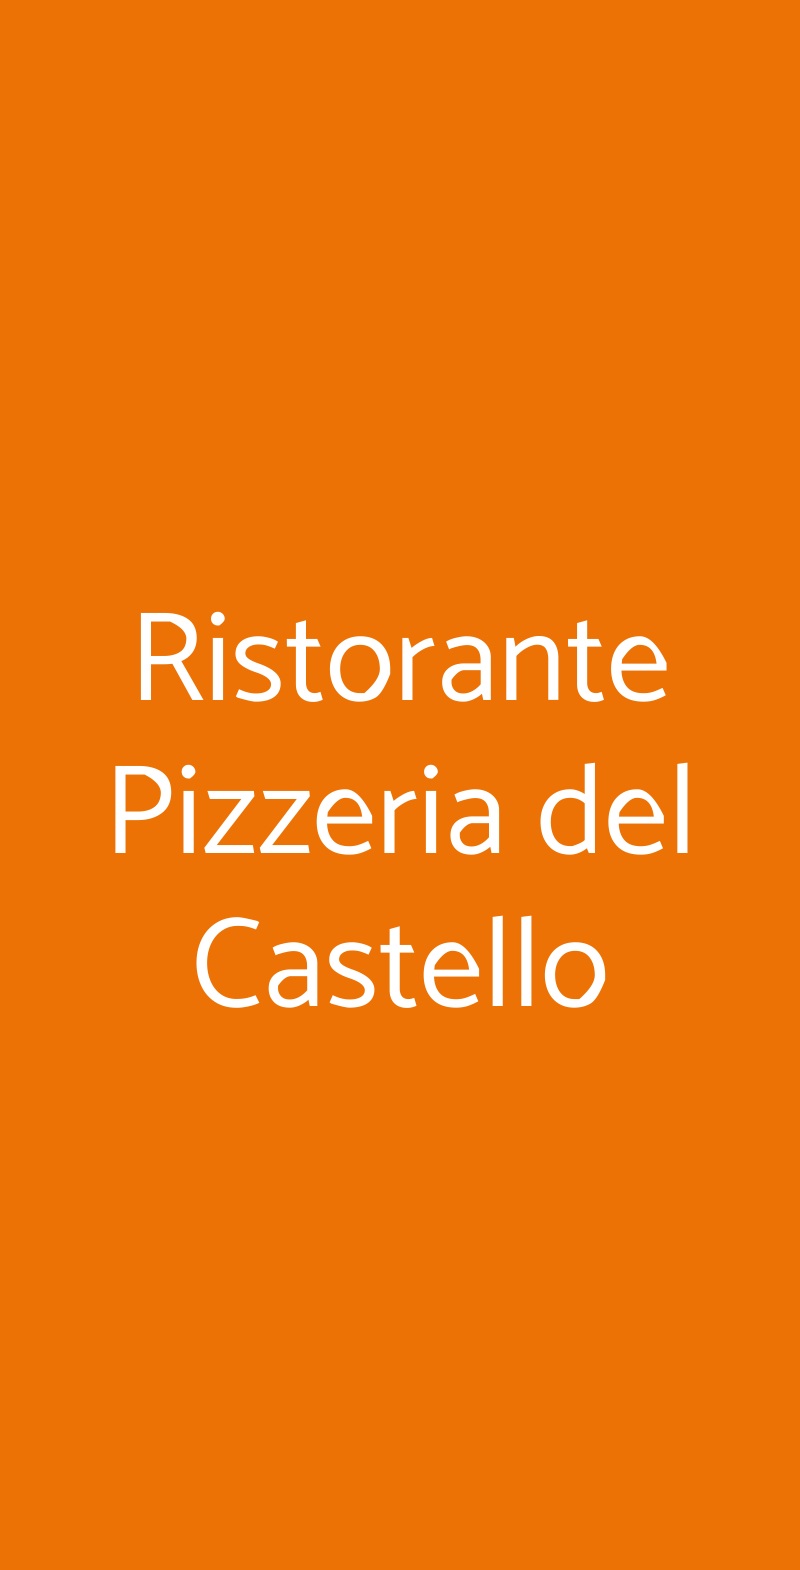 Ristorante Pizzeria del Castello Montalbano Elicona menù 1 pagina